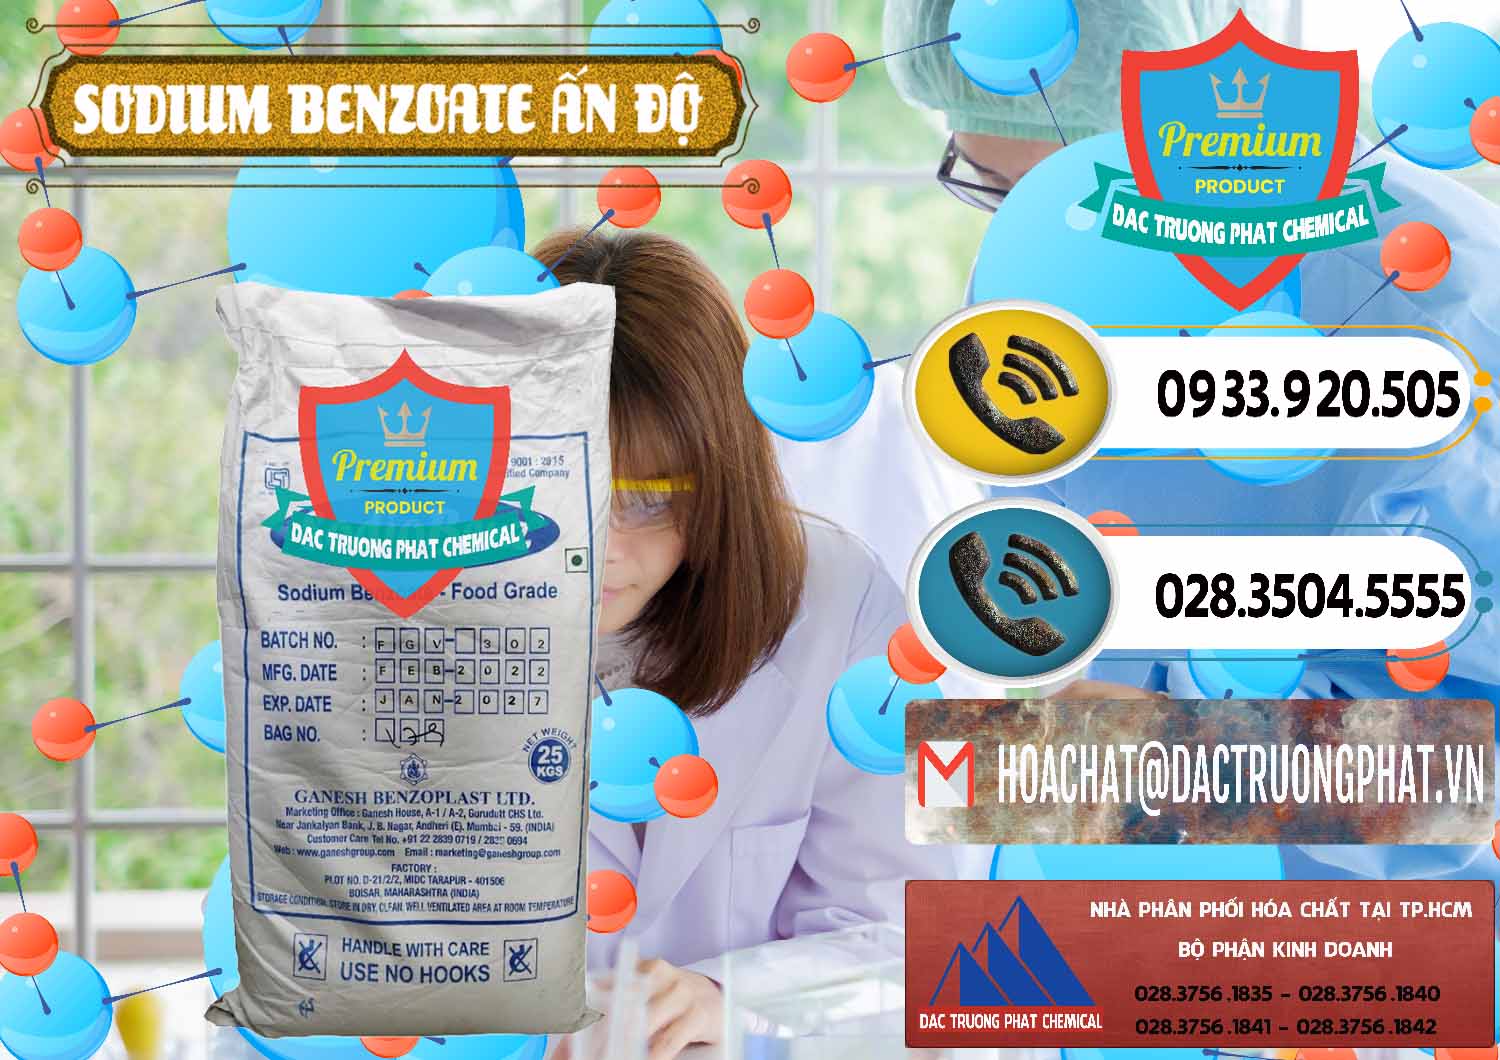 Cung ứng & bán Sodium Benzoate - Mốc Bột Ấn Độ India - 0361 - Công ty kinh doanh và phân phối hóa chất tại TP.HCM - hoachatdetnhuom.vn